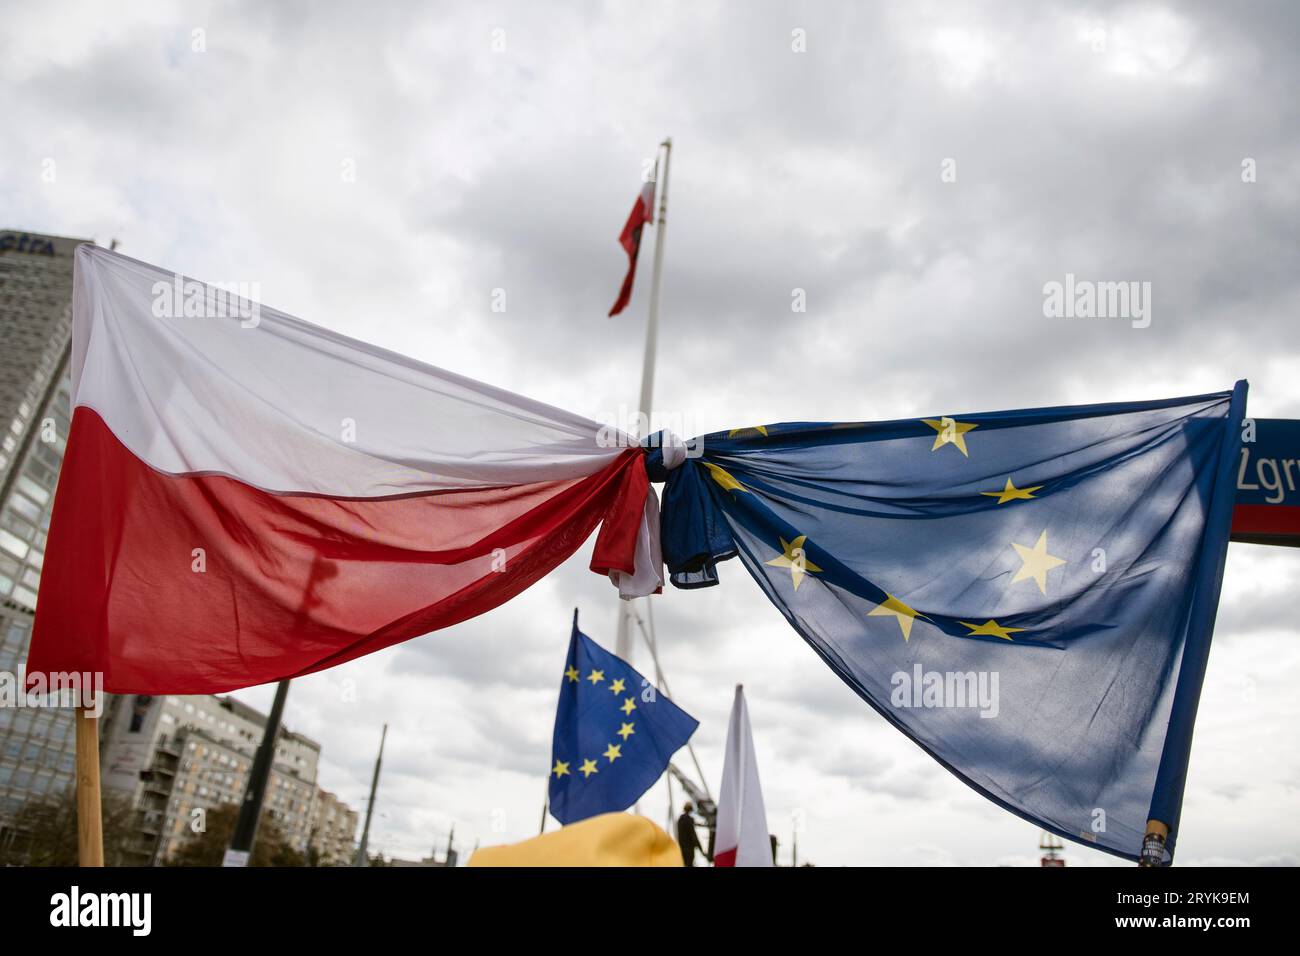 Die Flagge Polens und der EU wird während des Millionen-Herzen-Marsches in Warschau festgebunden gesehen. Hunderttausende Menschen nahmen unter dem Motto "Million Hearts March" an einem Marsch in Warschau Teil, der vom polnischen Oppositionsführer Donald Tusk organisiert wurde. der sich in seinen Bemühungen, die nationalistisch-konservative Regierung bei den bevorstehenden Parlamentswahlen am 15. Oktober zu entlasten, einem heftigen Kampf gegenübersieht. Der märz, das größte Wahlkampfereignis der Oppositionskoalition, war inspiriert von dem großen Erfolg eines ähnlichen marsches am 4. Juni, der Hunderttausende oppositioneller Anhänger von A anlockte Stockfoto